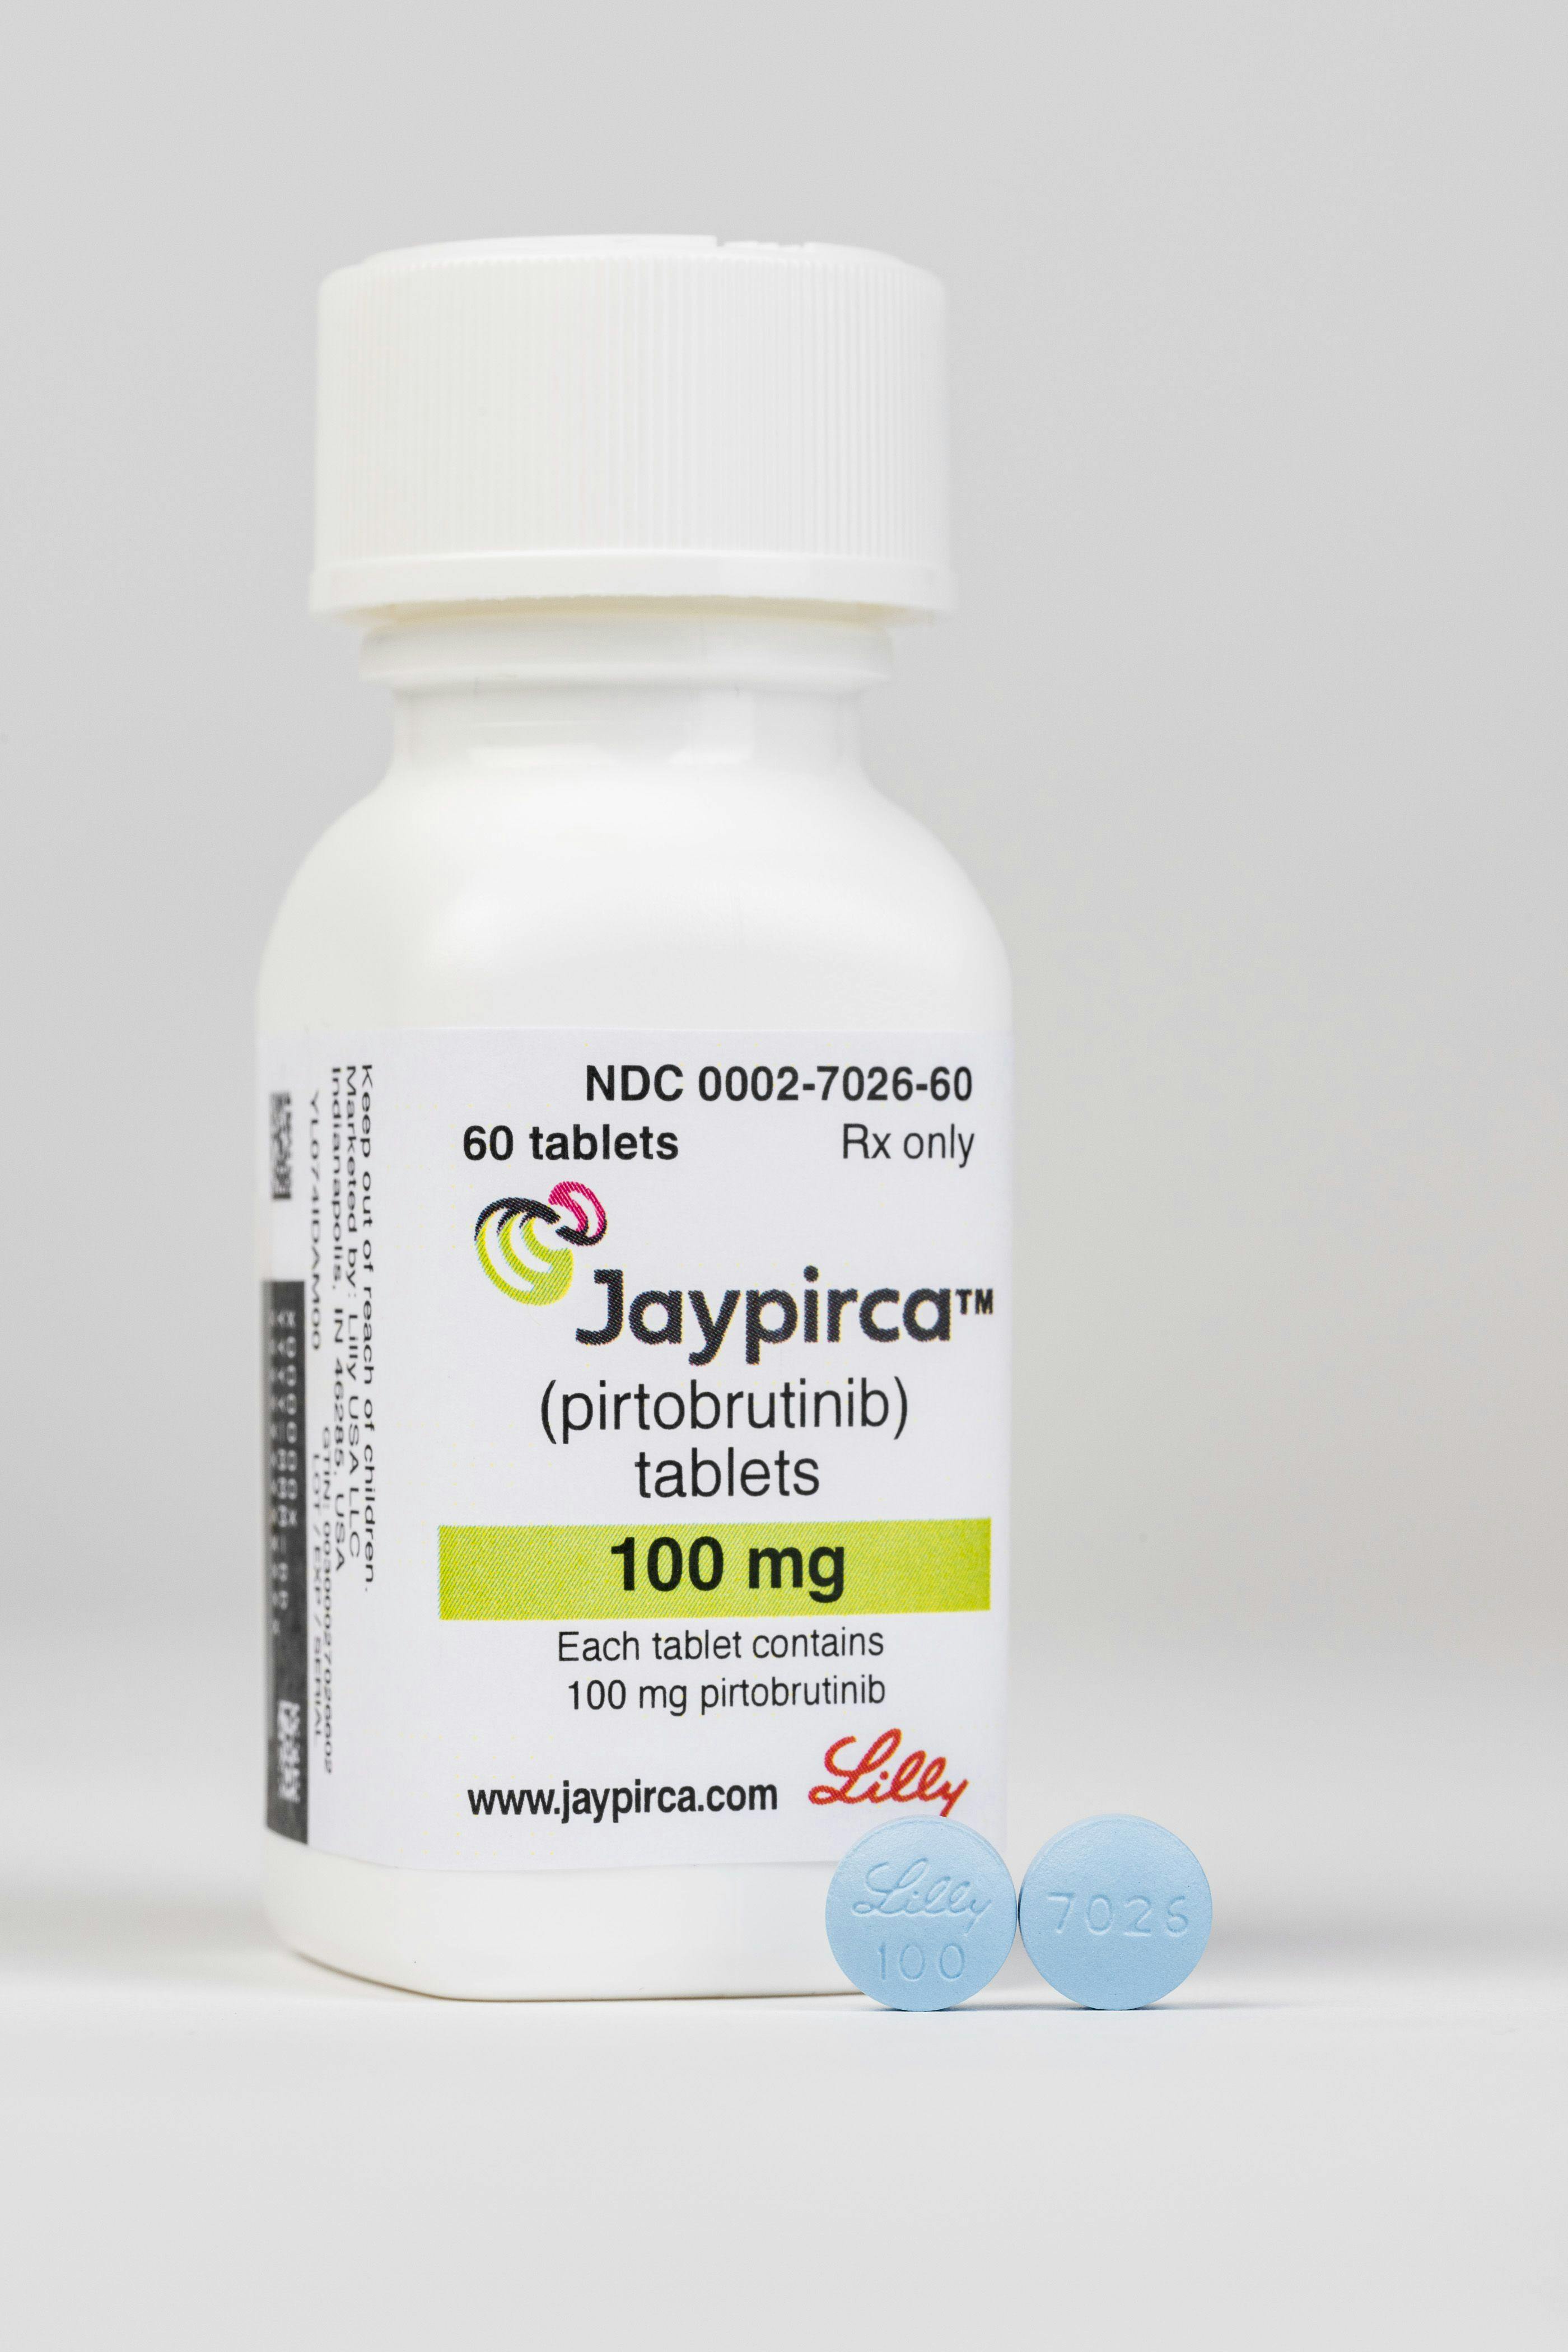 FDA Approves Jaypirca for Leukemia/Lymphoma Indication